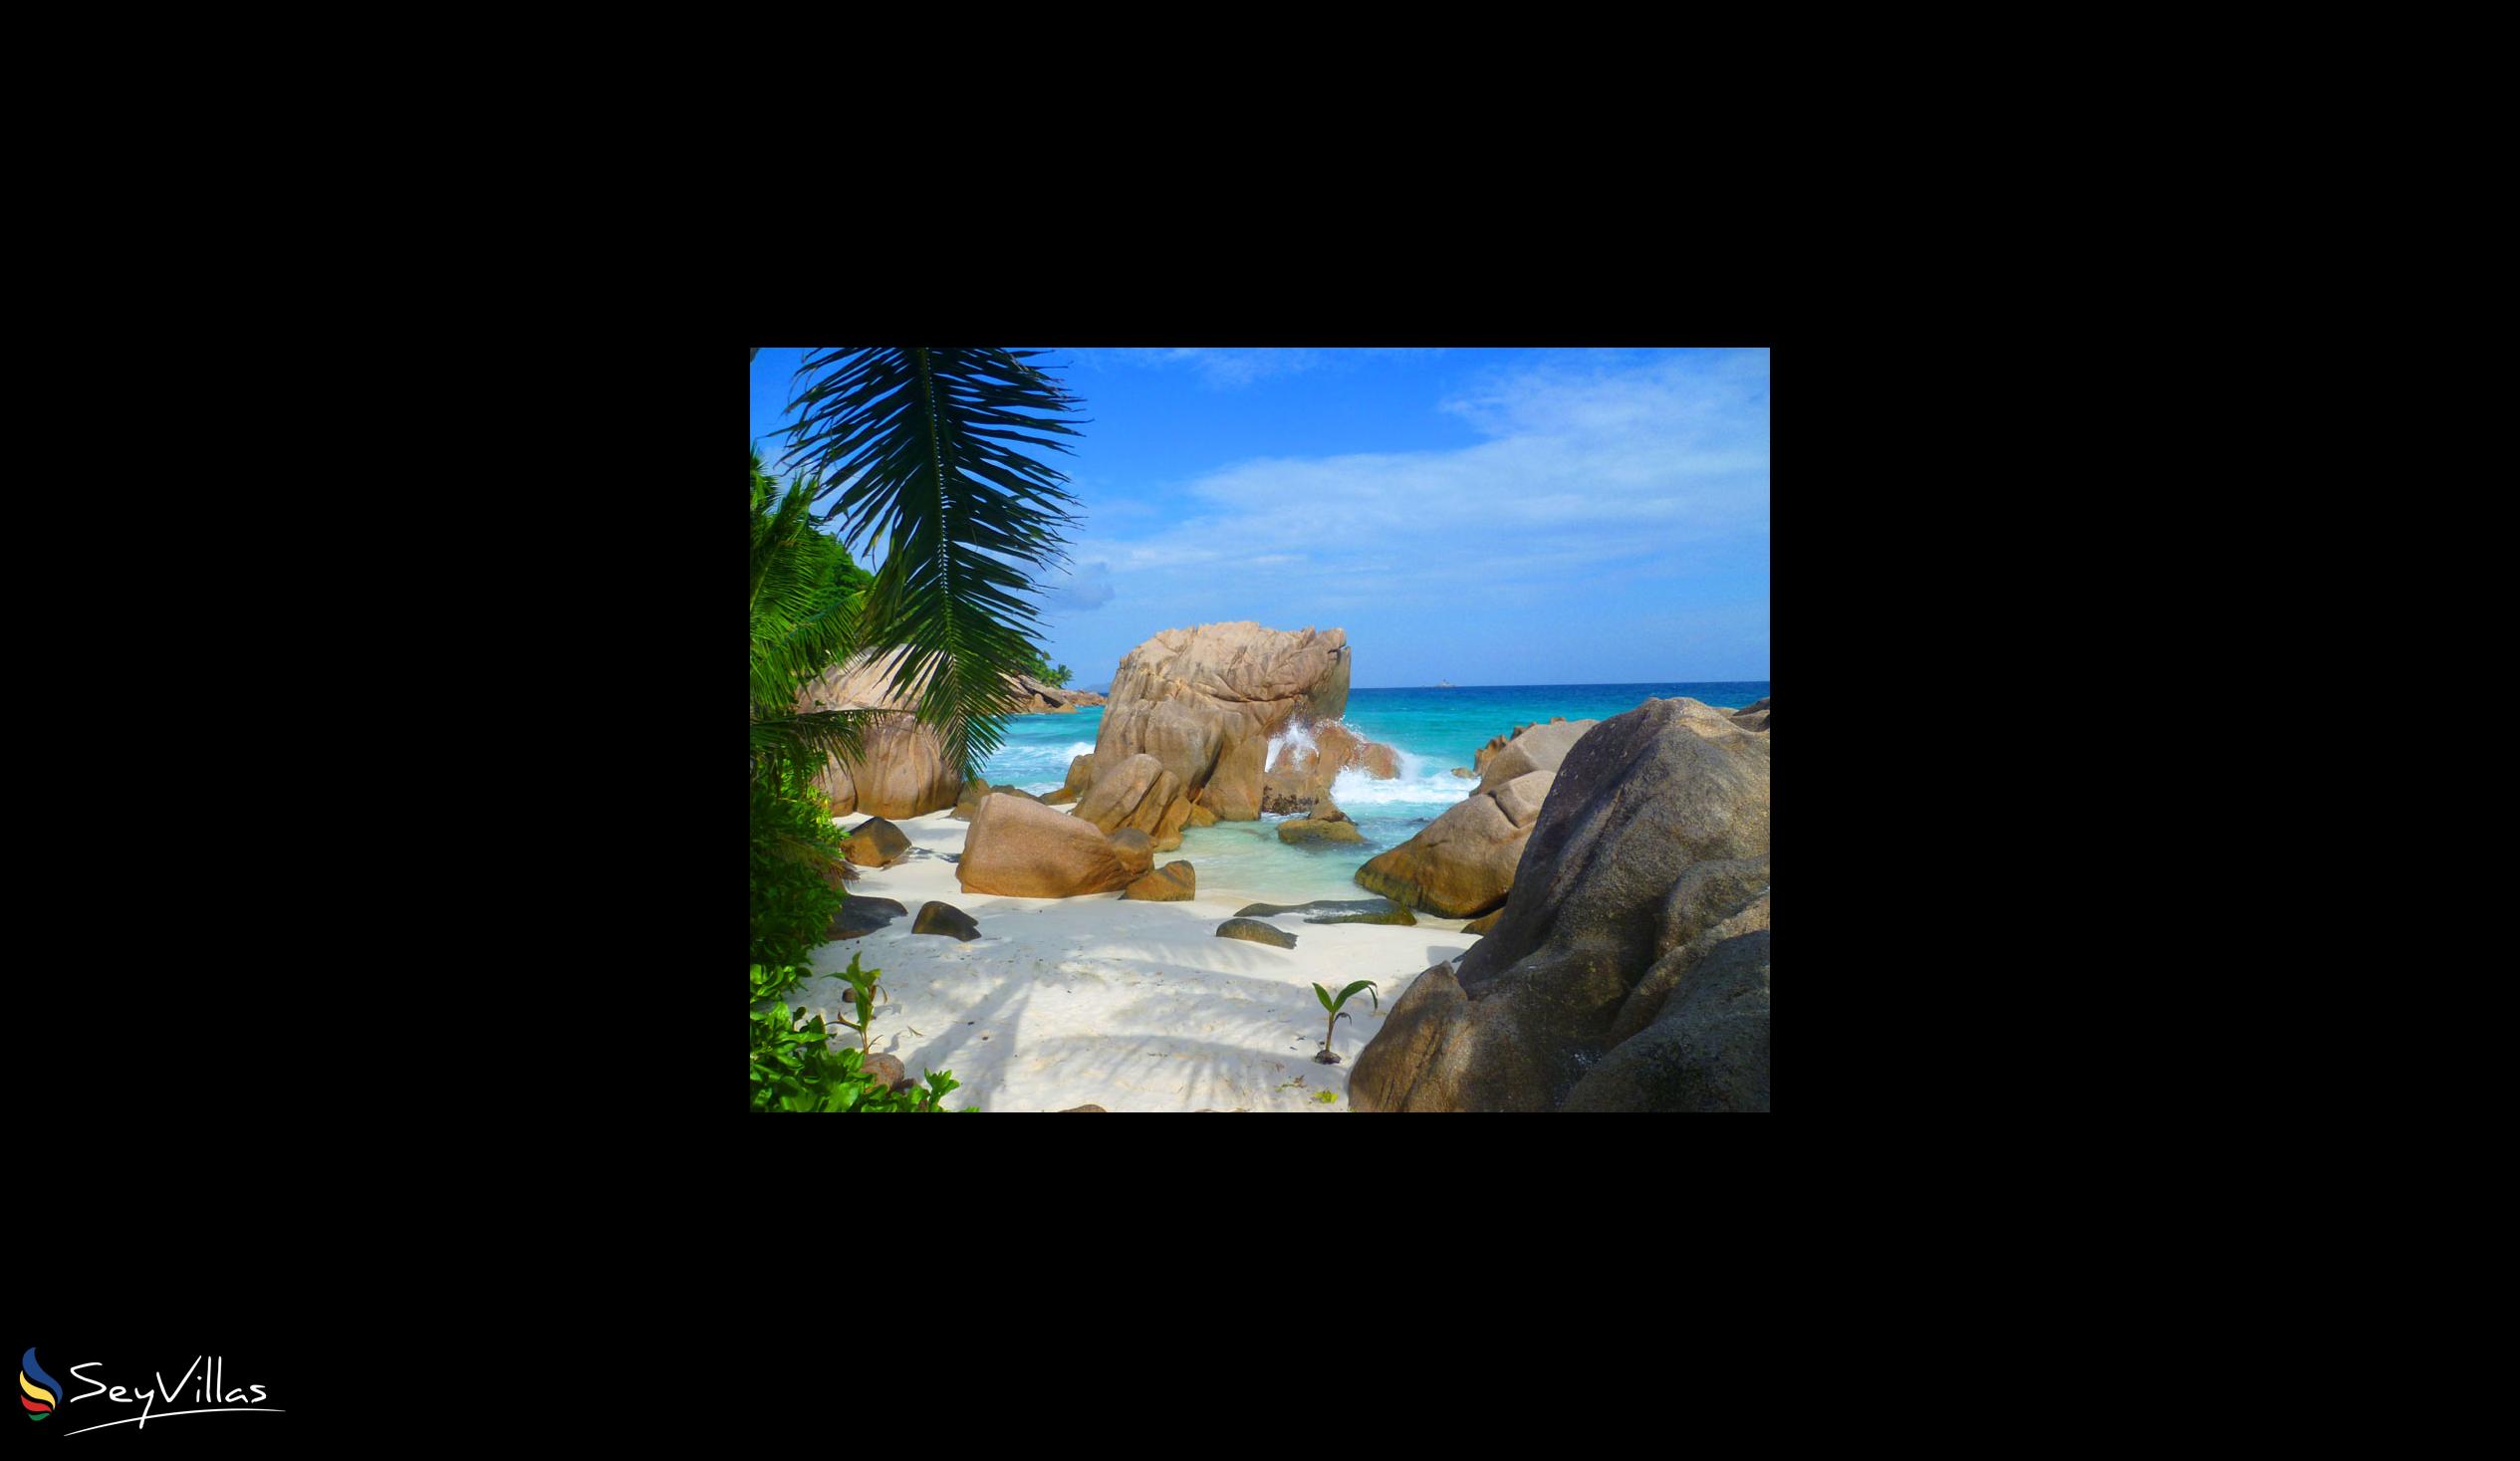 Foto 36: Le Relax Beach House - Plages - La Digue (Seychelles)